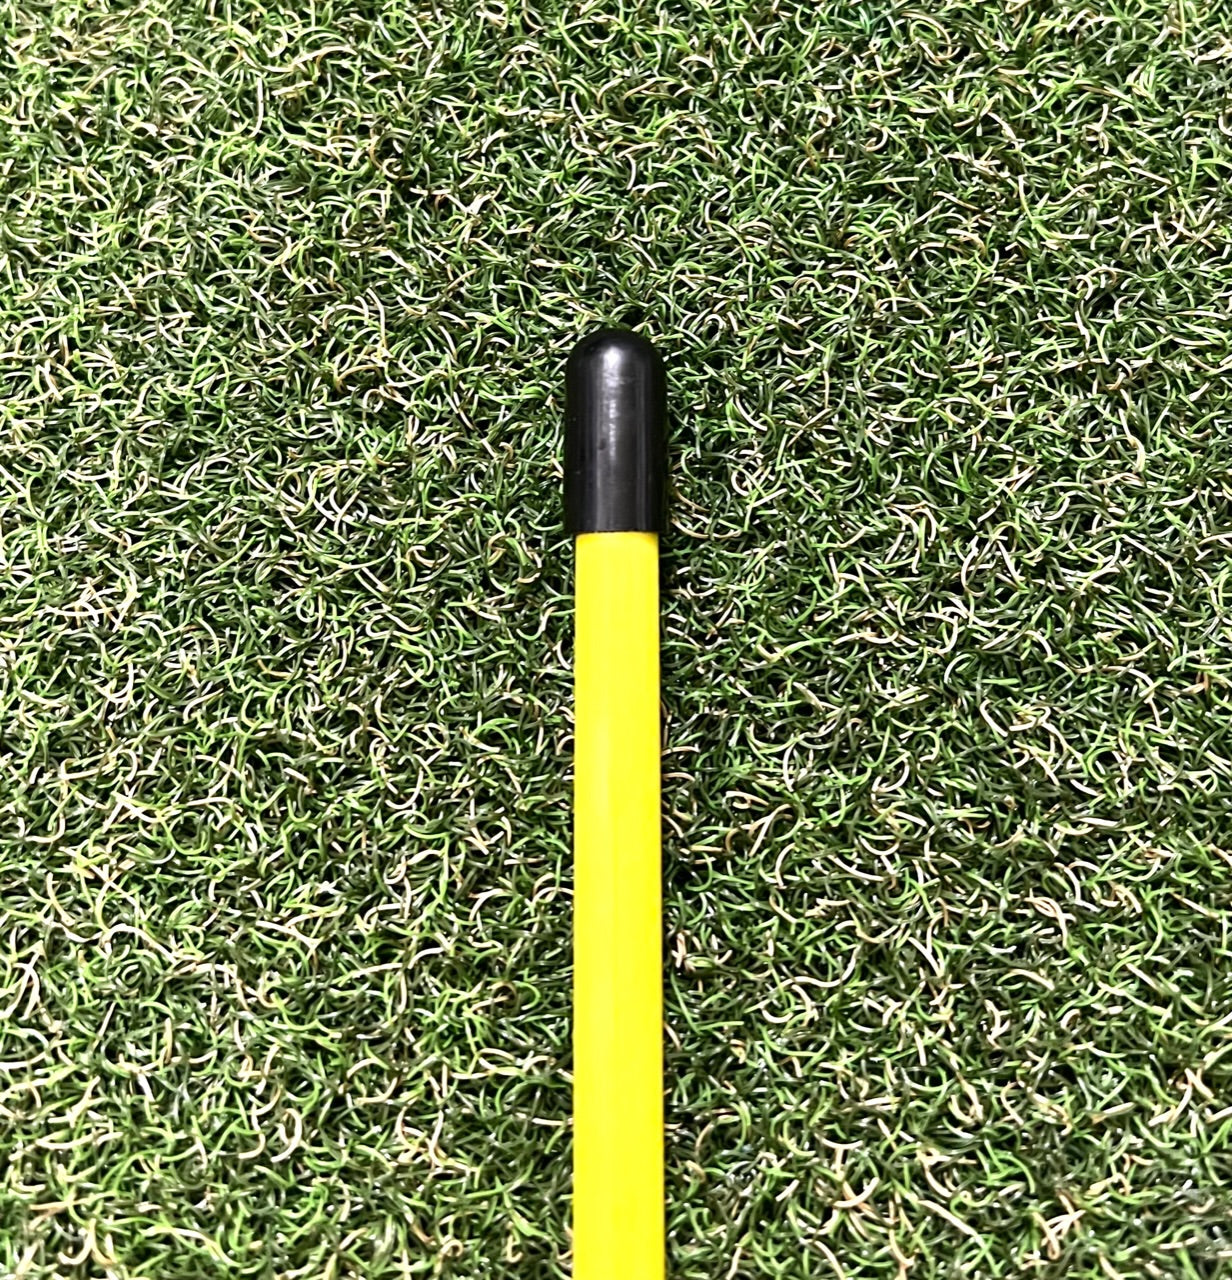 Bâtons d'alignement de golf pliables à 3 sections avec instructions